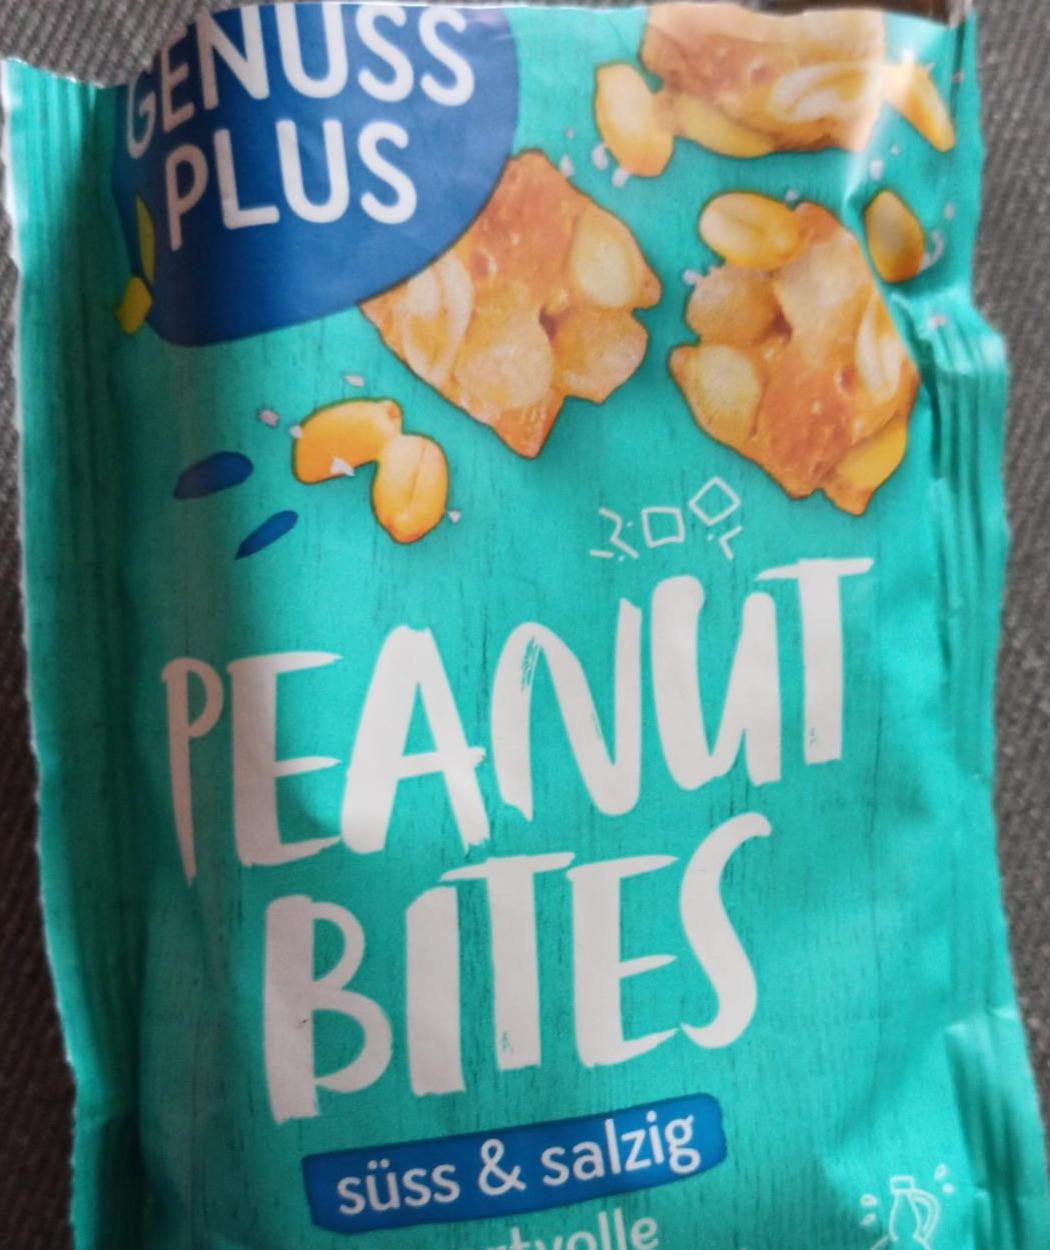 Fotografie - Peanut Bites süss & salzig Genuss Plus